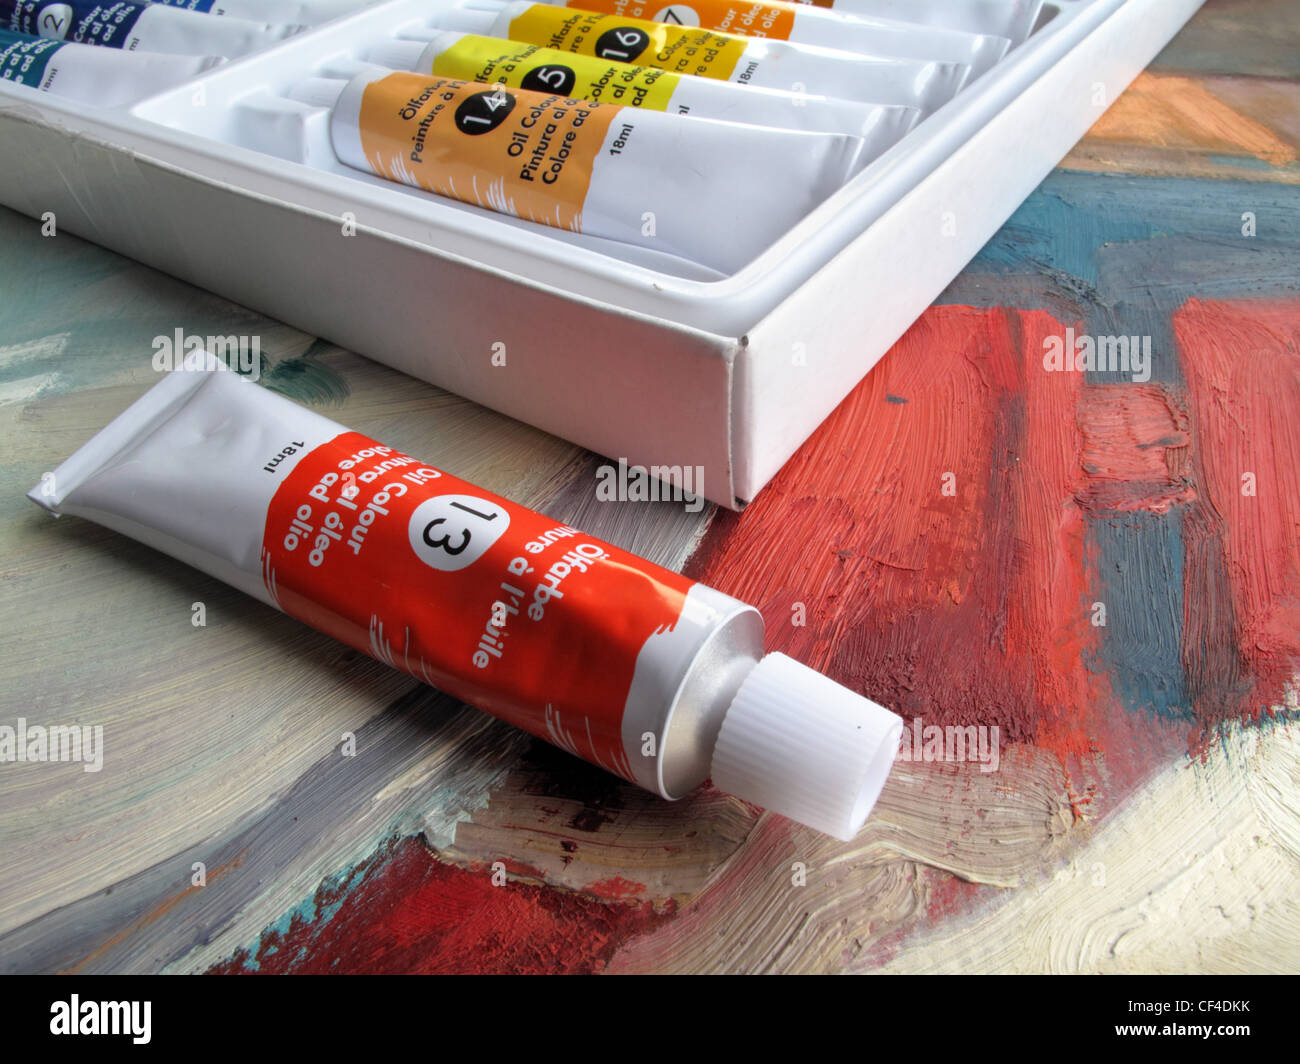 Un nouveau tube de peinture à l'huile rouge est assis à côté d'une boîte de peinture à l'huile - se trouvent sur le dessus d'une peinture à l'huile. Banque D'Images